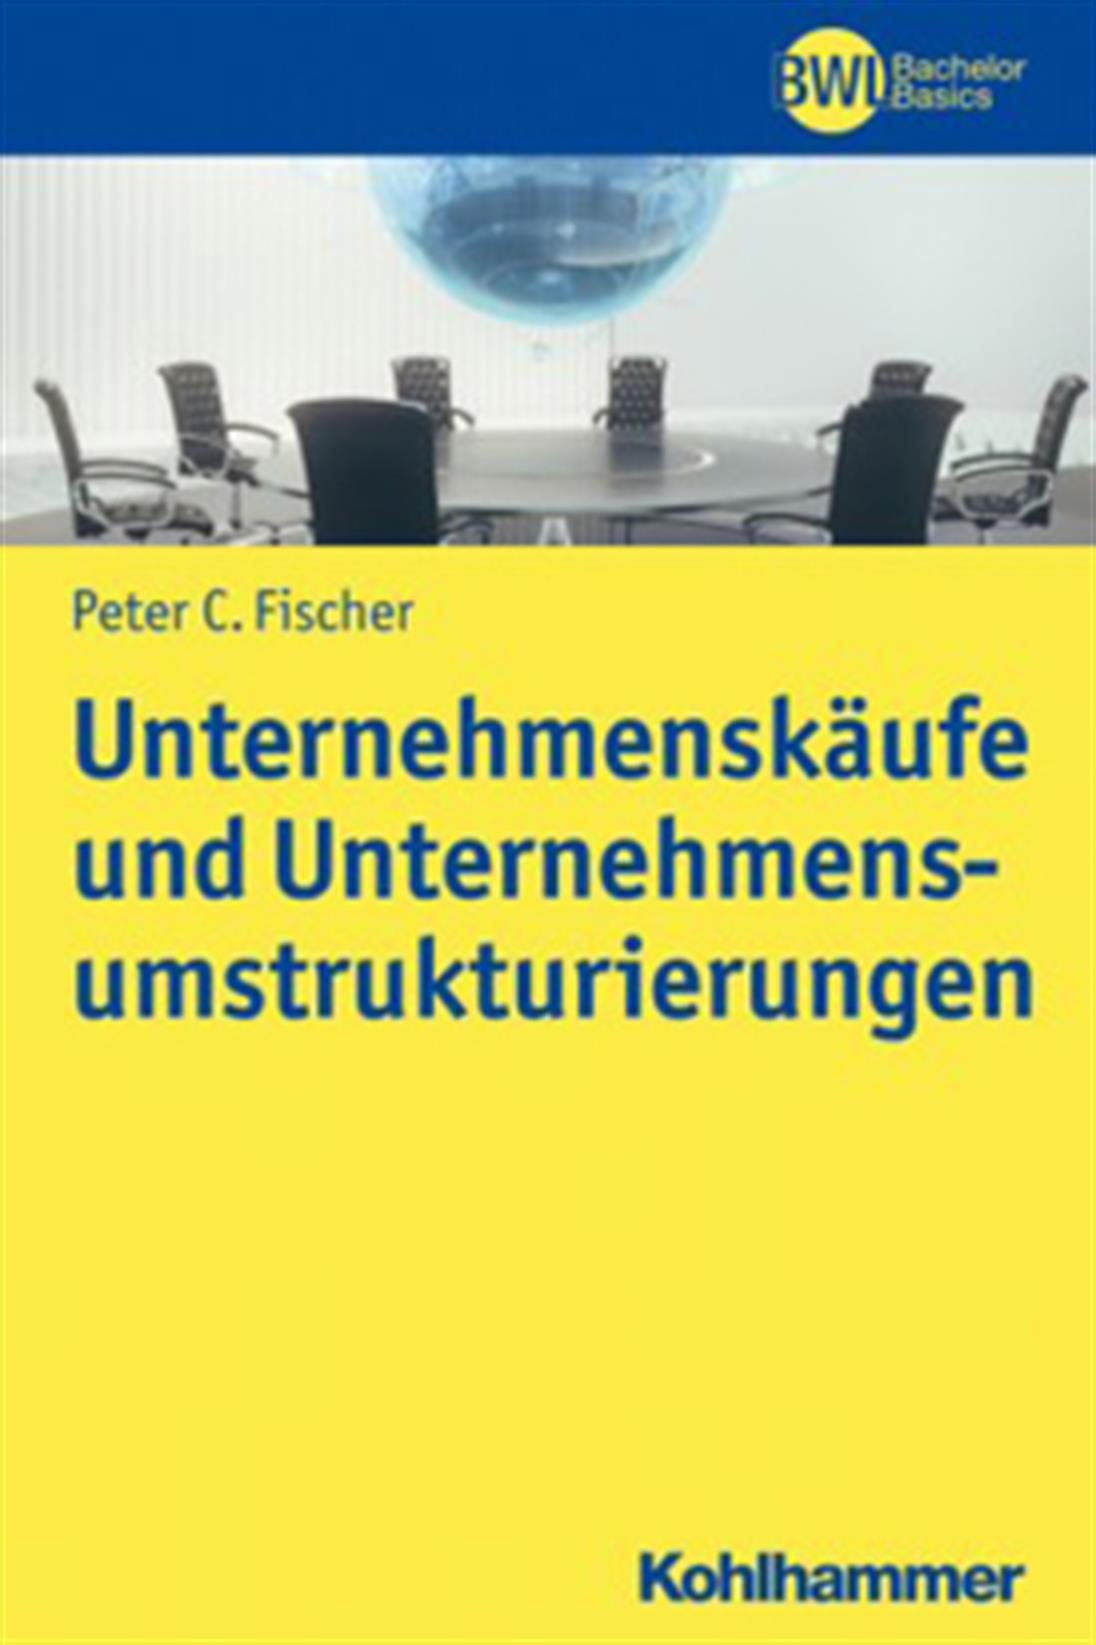 Unternehmenskäufe und Unternehmensumstrukturierungen von Herrn Prof. Dr. Peter C. Fischer, M.C.J.